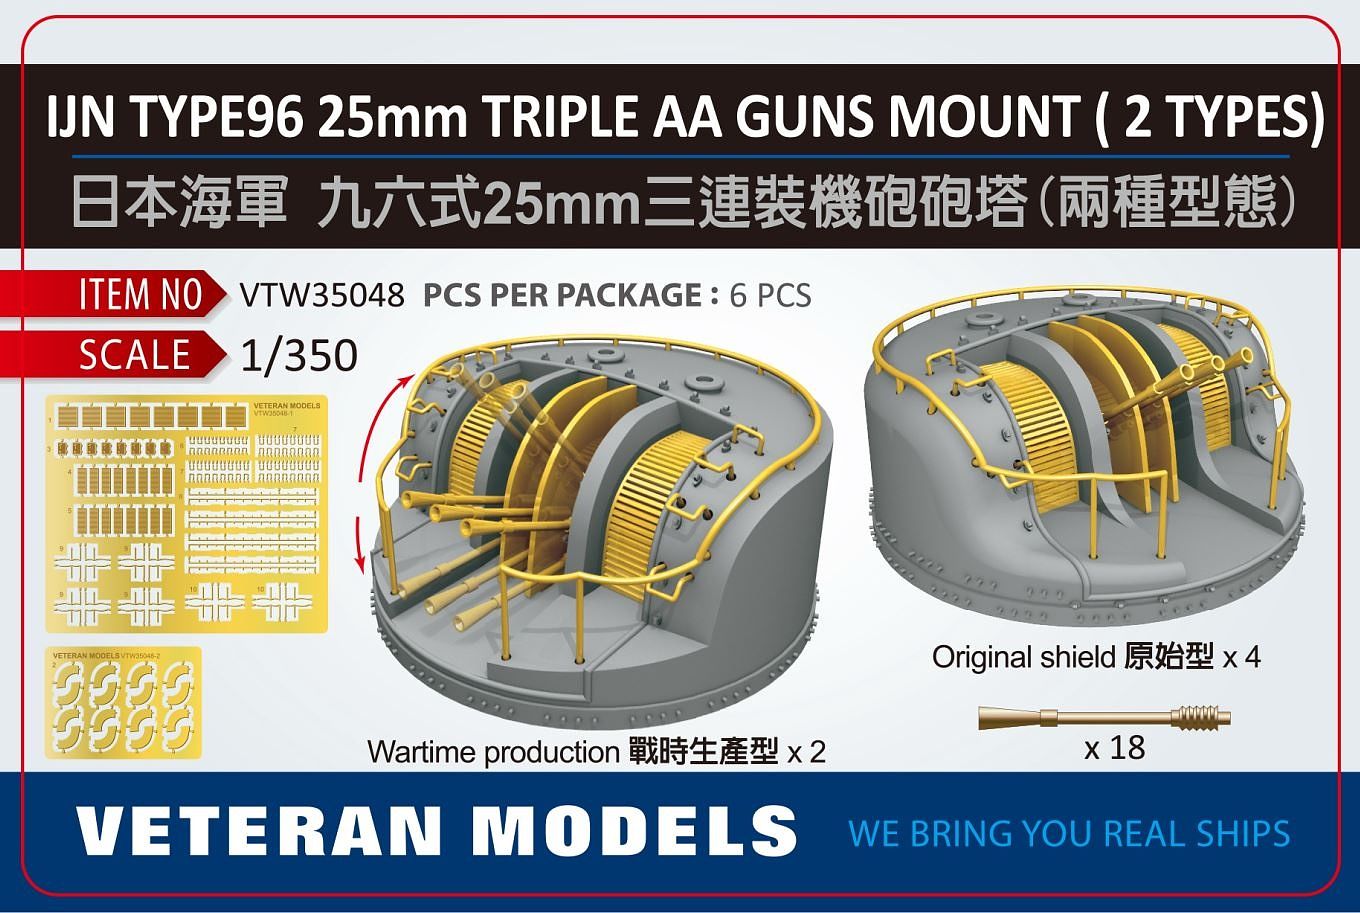 1/350 日本海軍 爆風避盾付 九六式25mm 三連装機銃セット【VTMW35048:4589913273504】